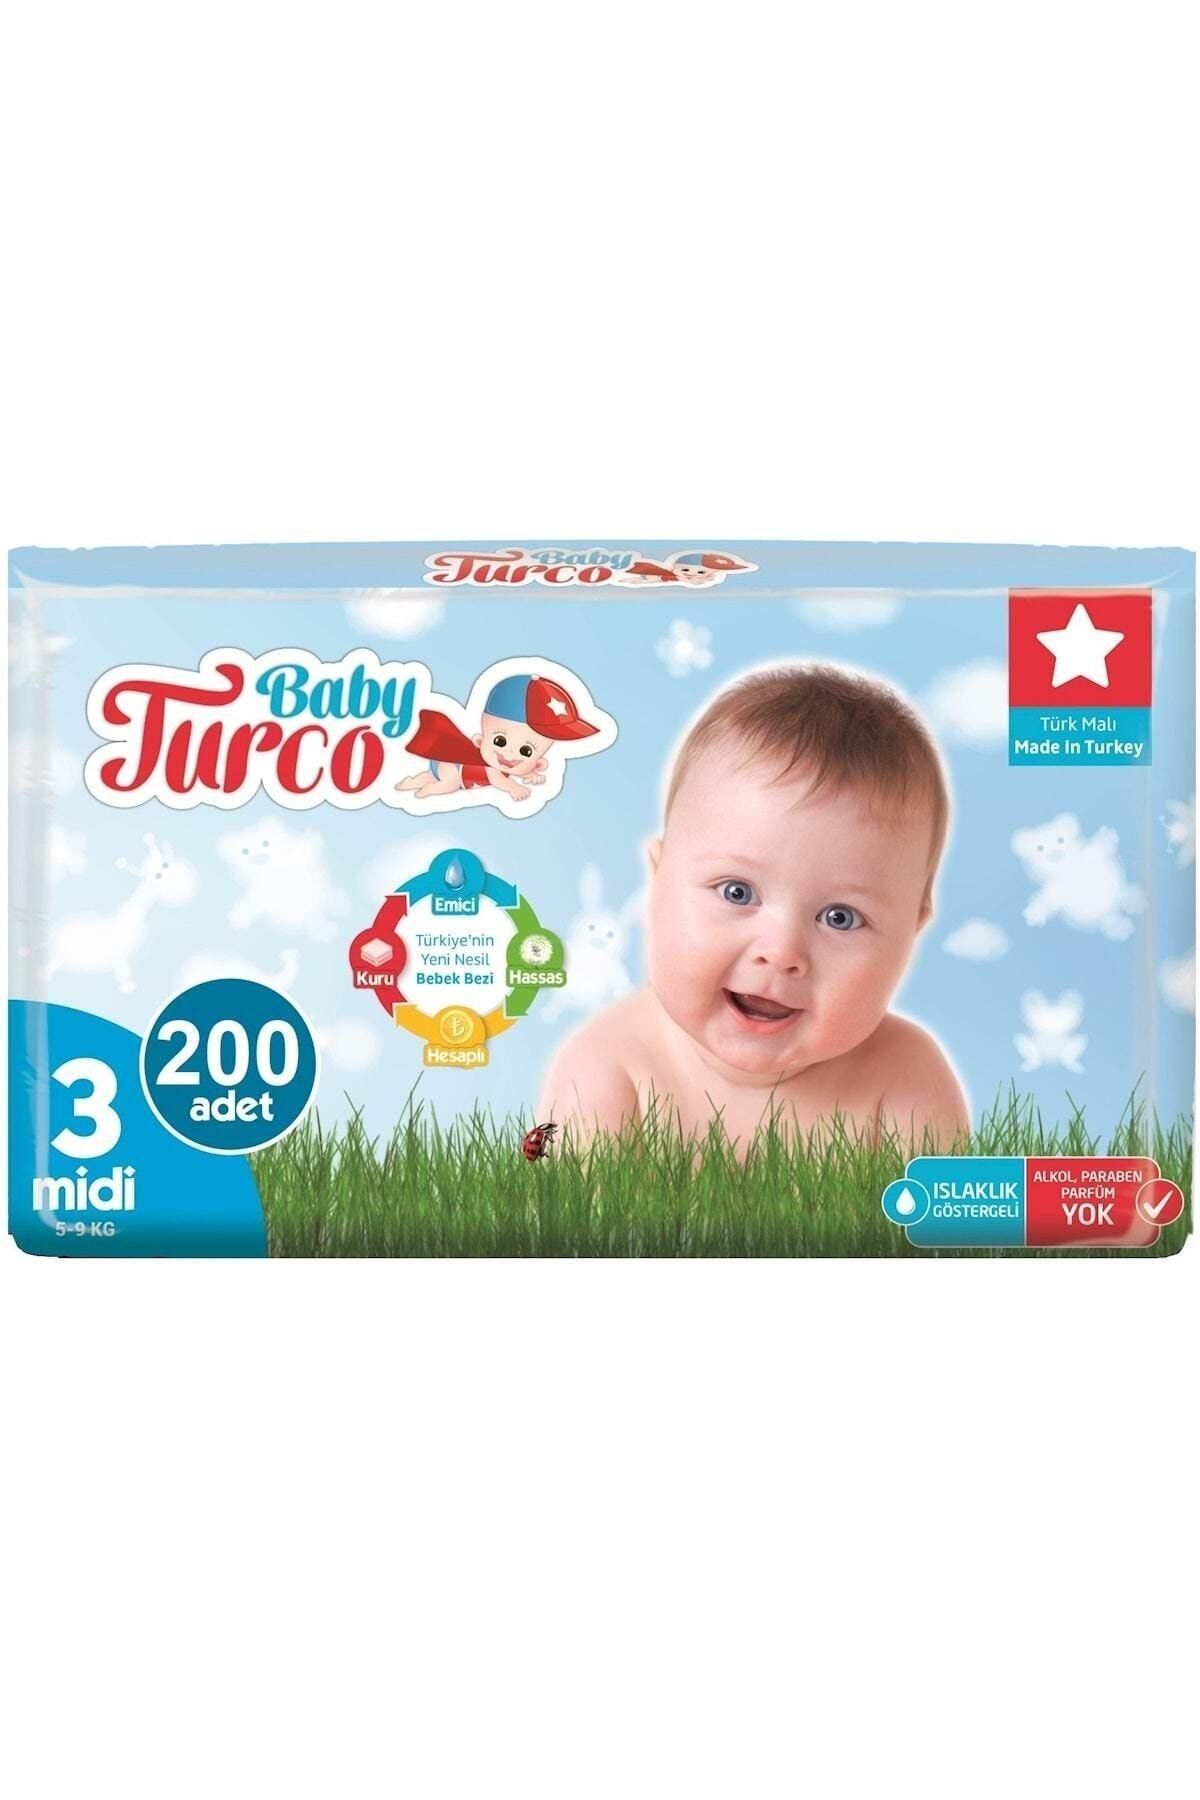 Baby Turco Bebek Bezi Jumbo 3 Beden Midi 200 Adet